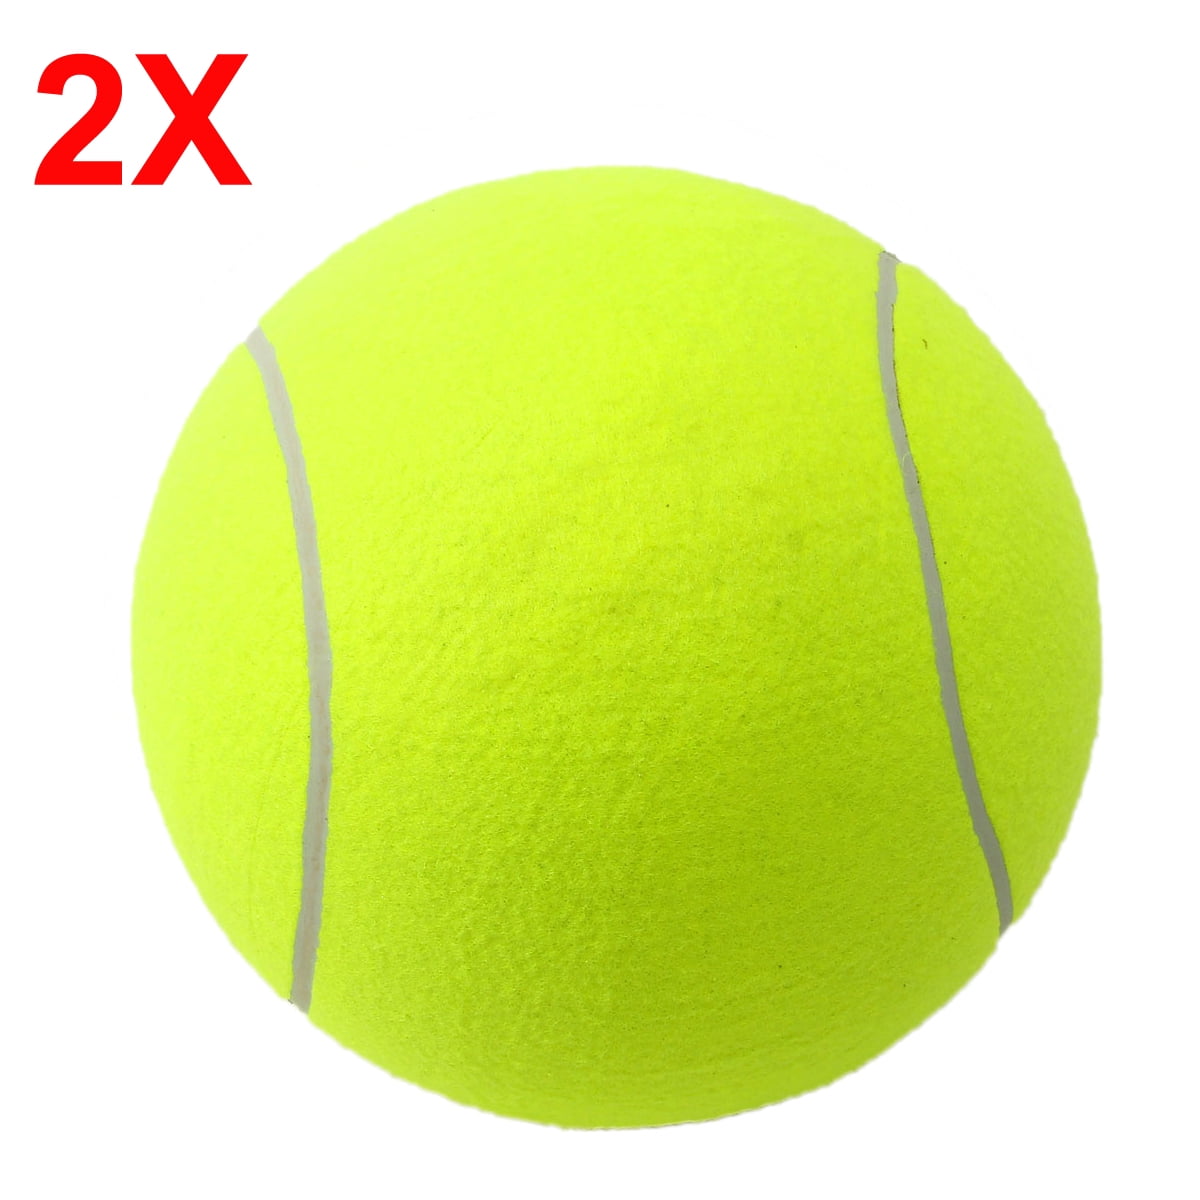 tennis ball launcher walmart